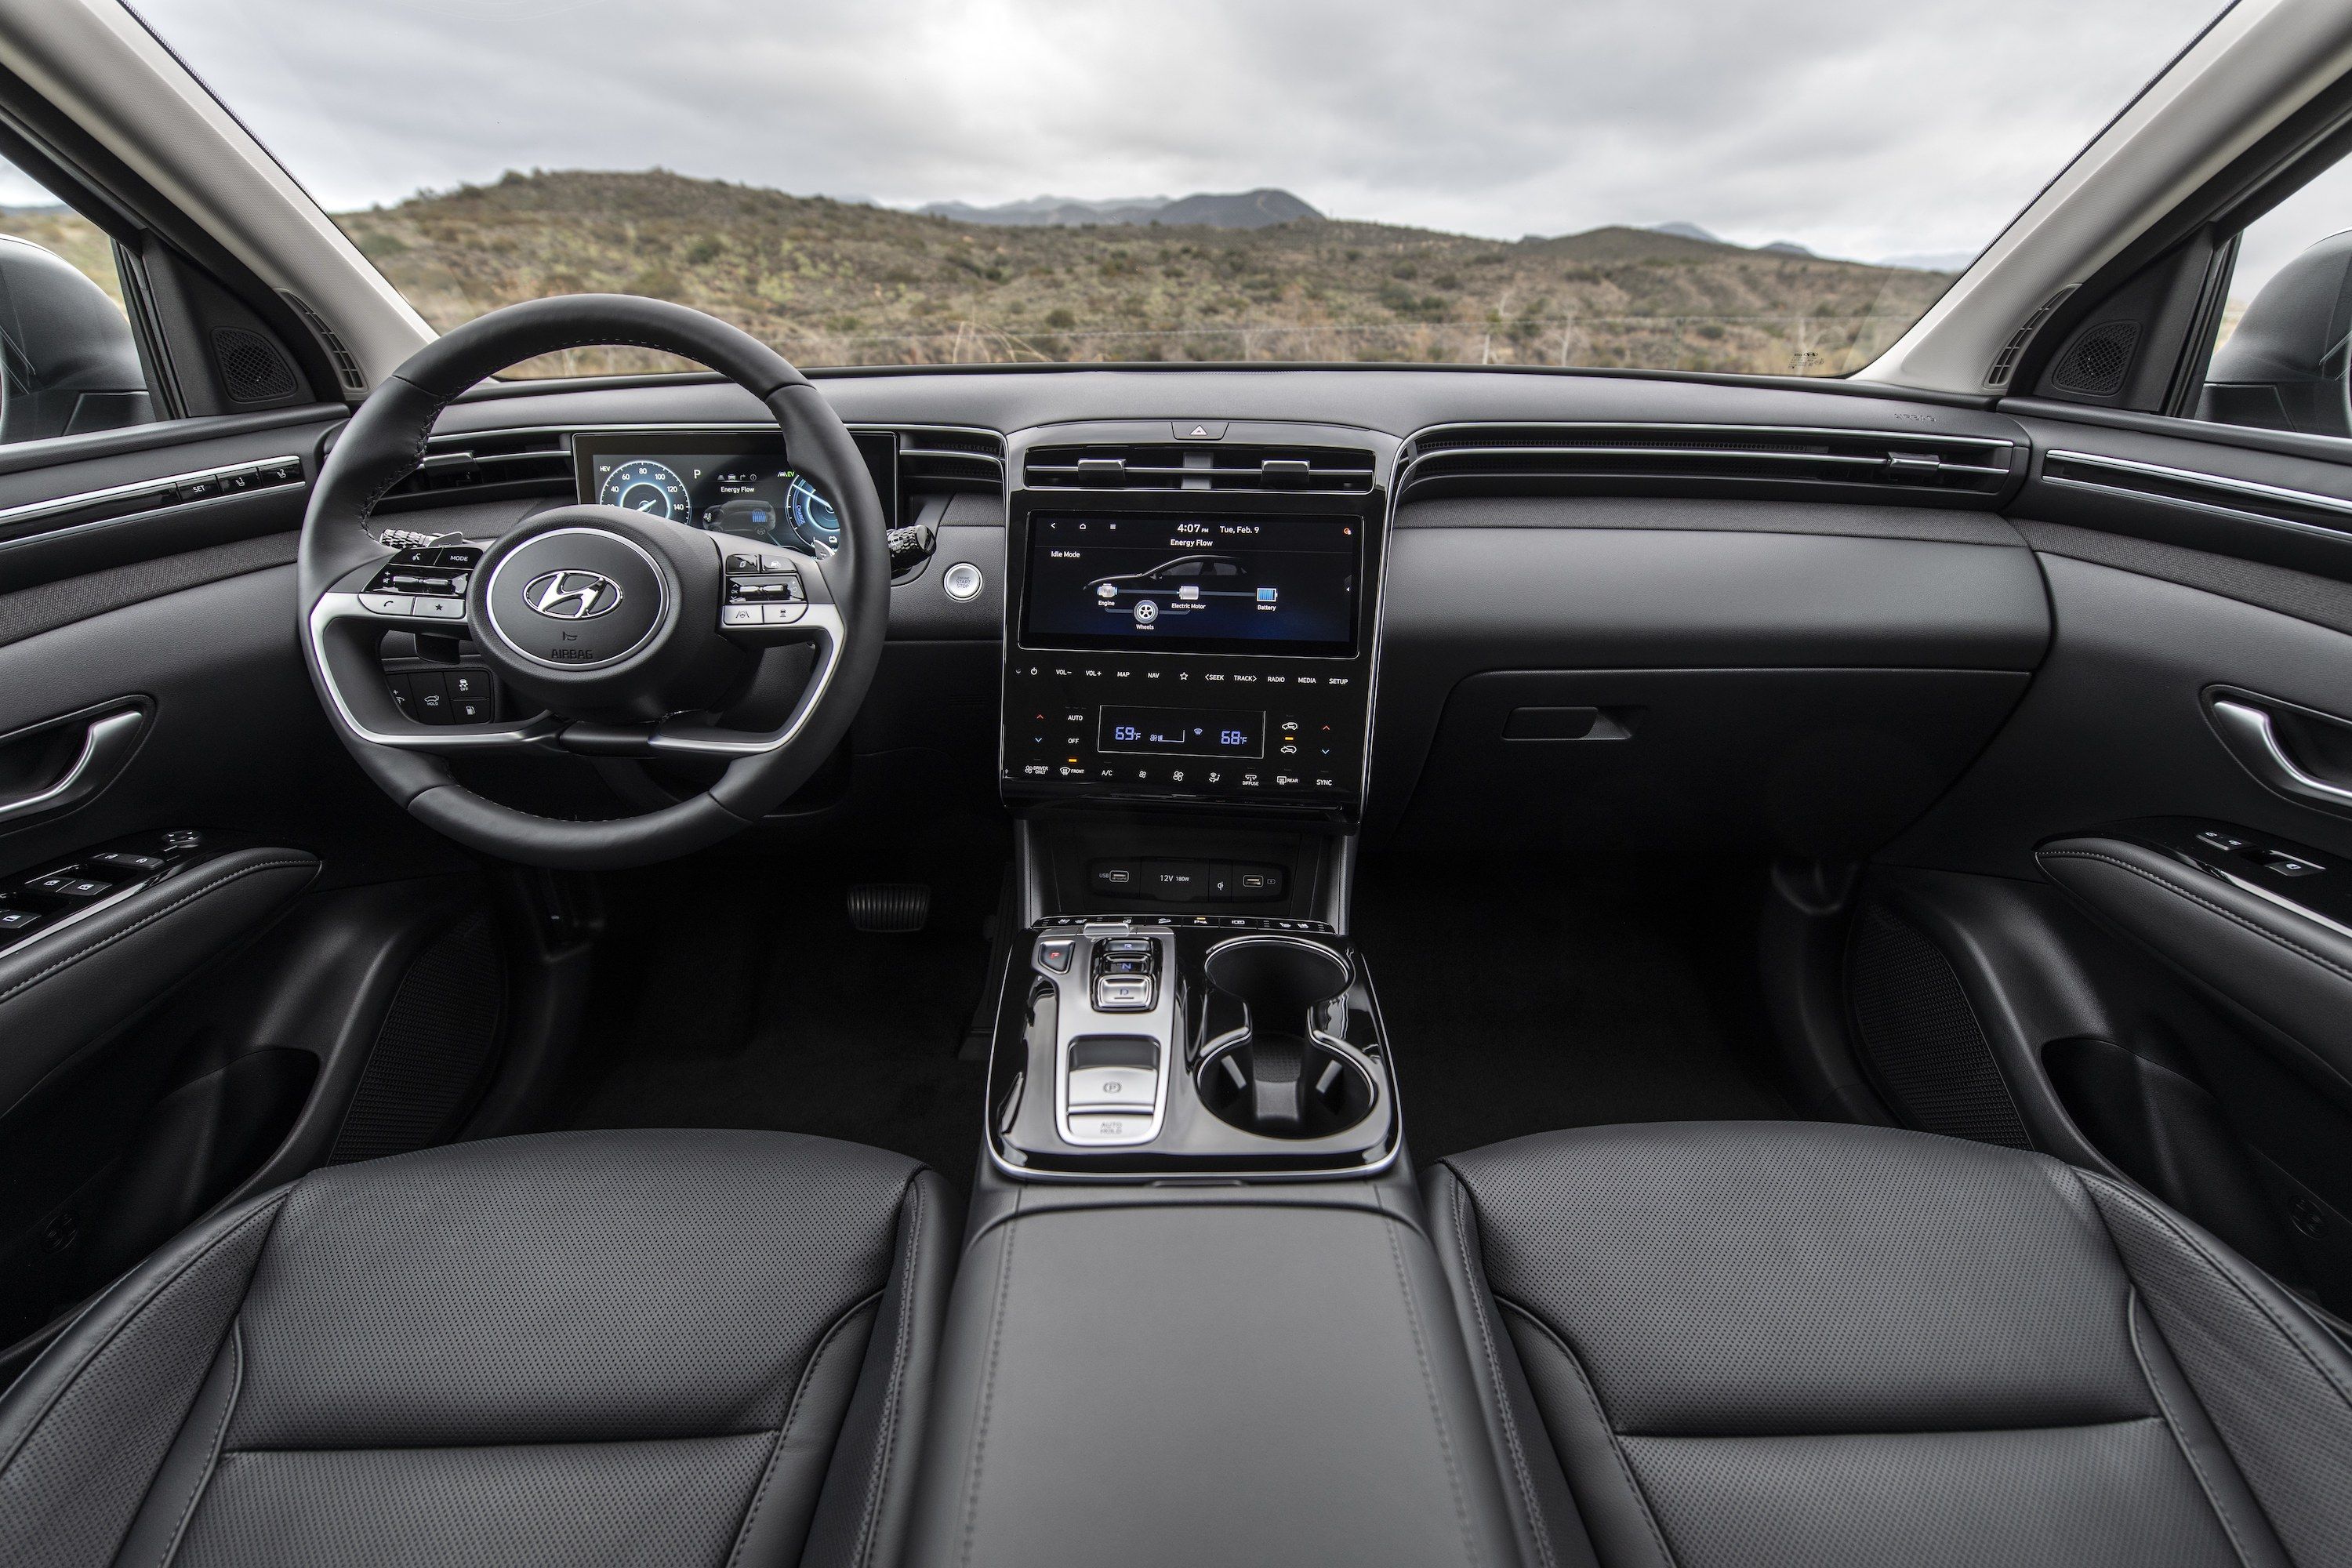 Hyundai Tucson NX4 Executive Diesel 1.6 review #tucson #nx4 #hyundai 